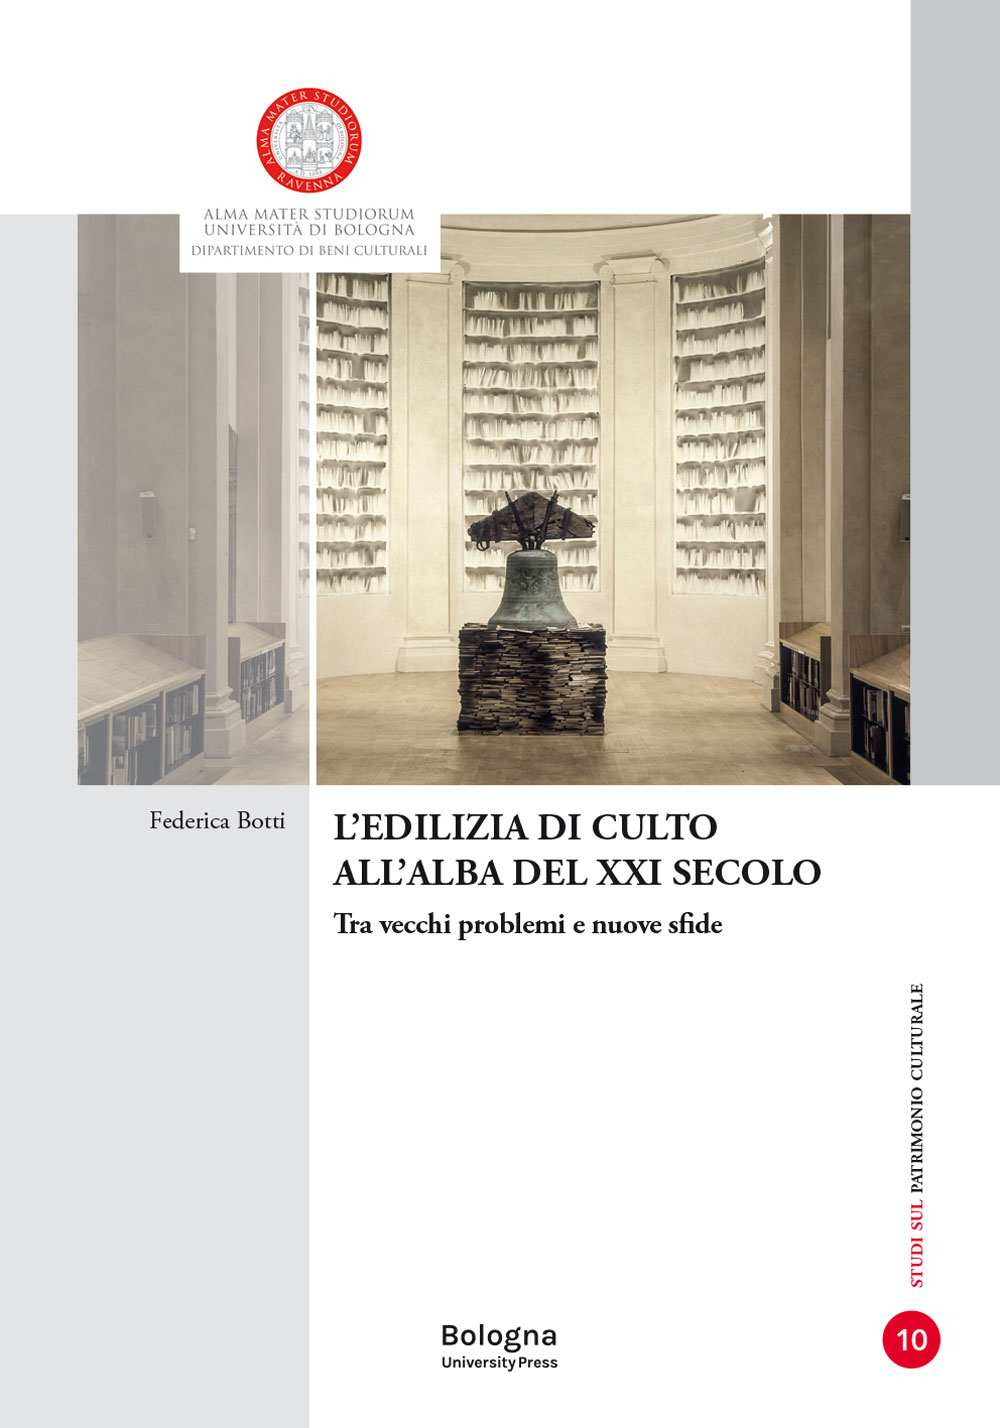 L'edilizia di culto all'alba del XXI secolo - Bologna University Press